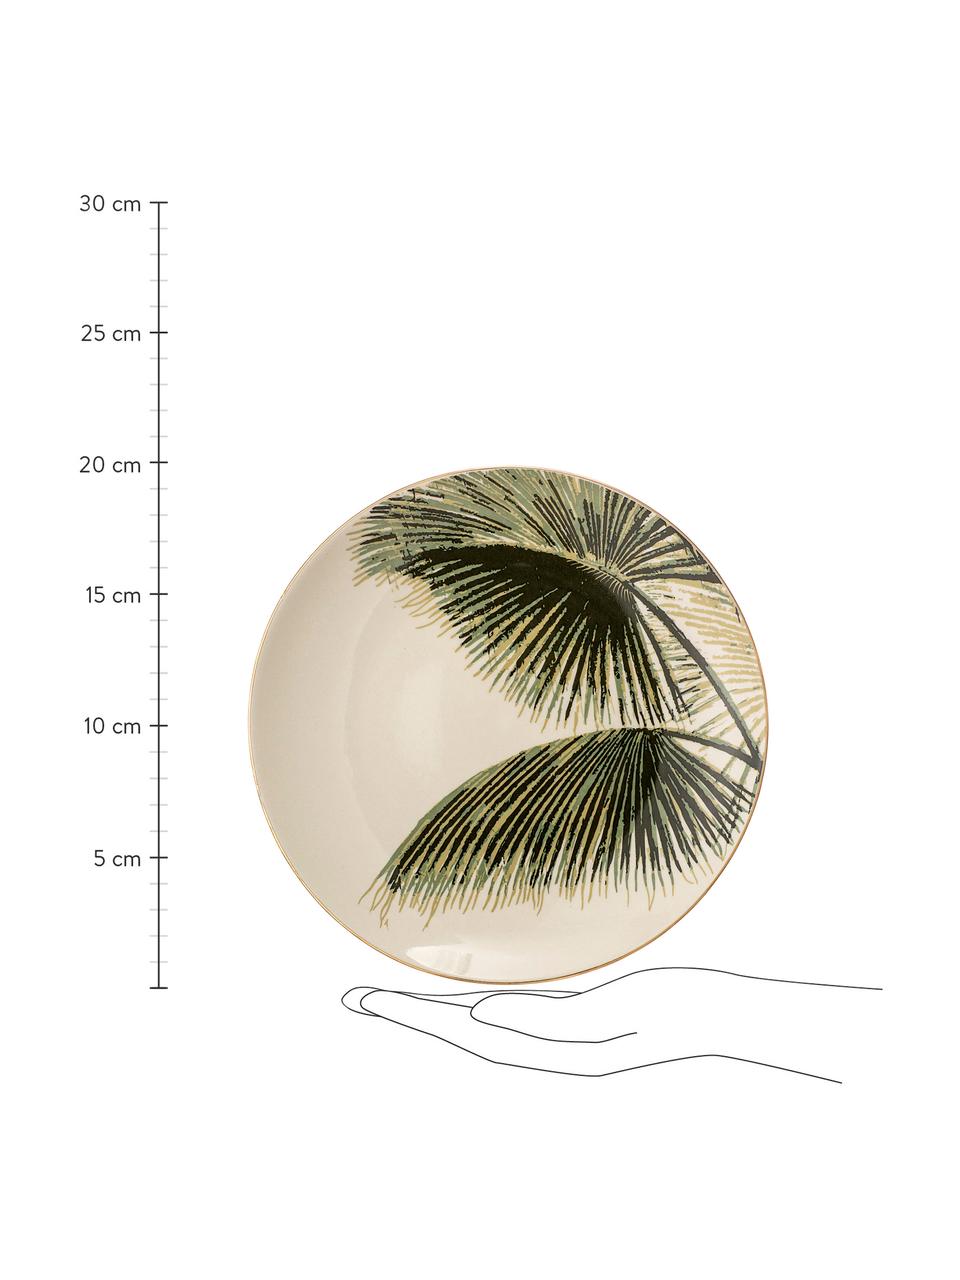 Platos postre Aruba, 4 uds., Gres, Blanco crema, verde, Ø 20 cm